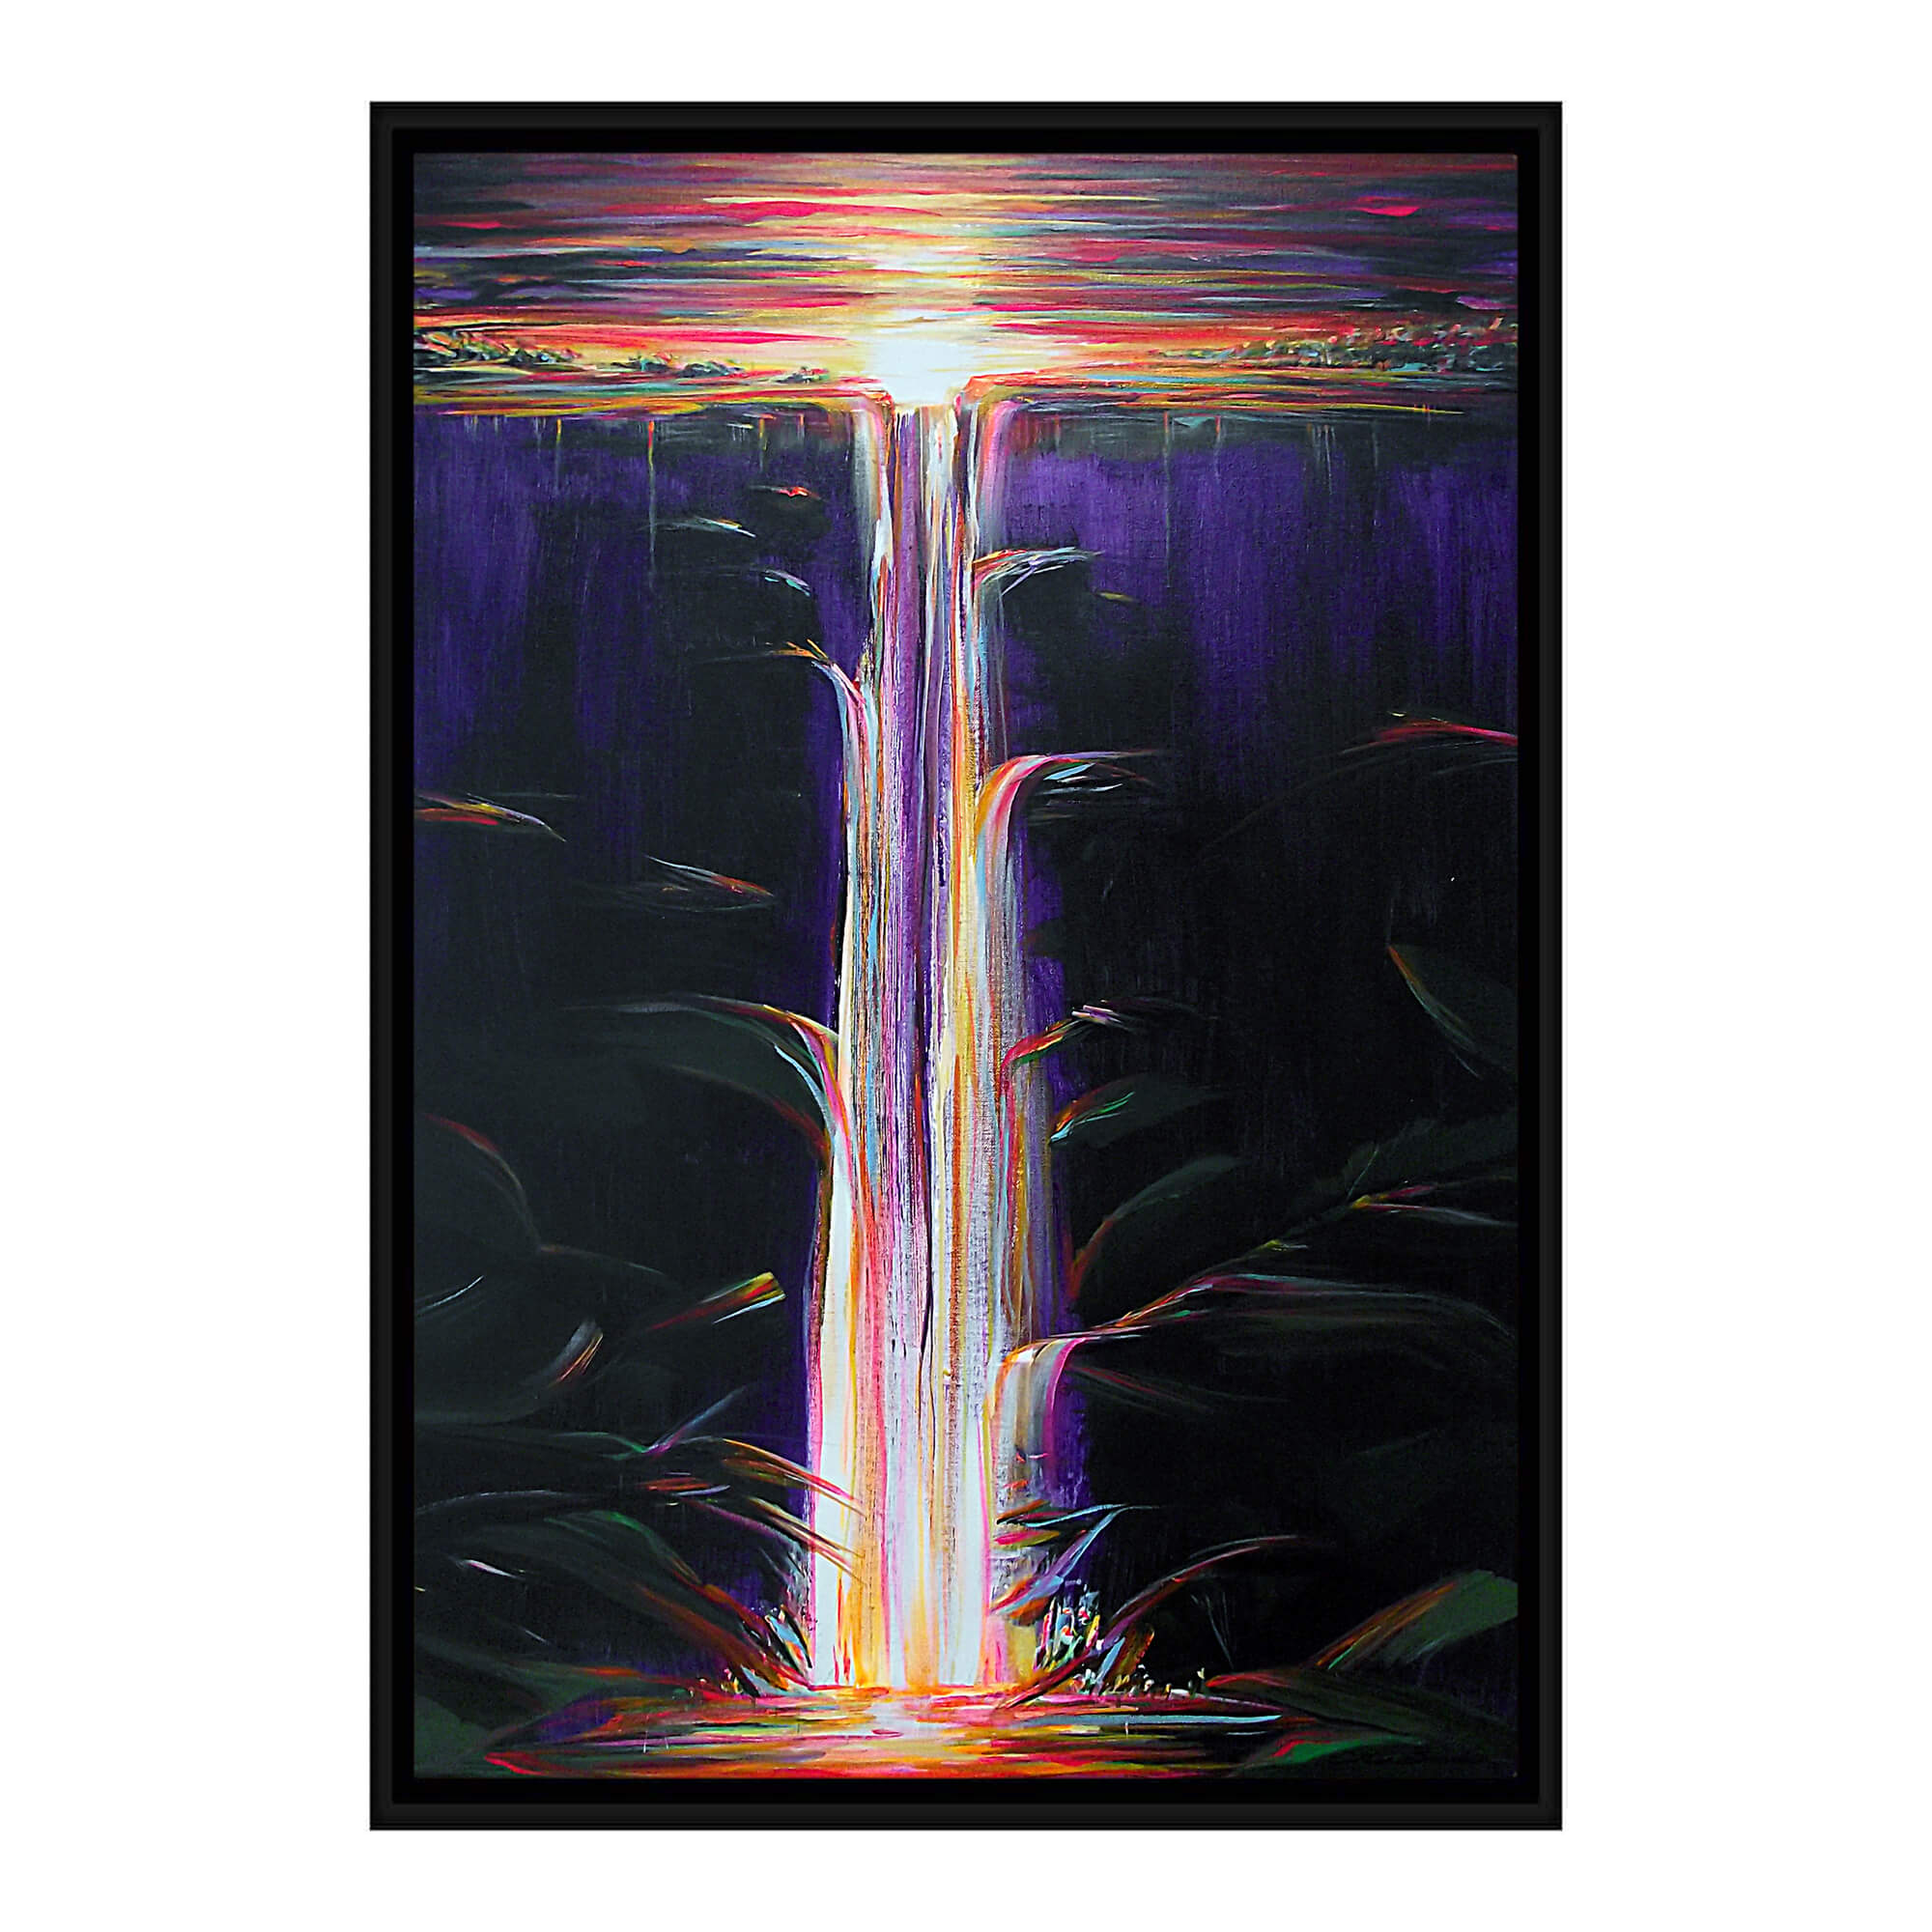 Abstract waterfall by Hawaii artist Jess Burda